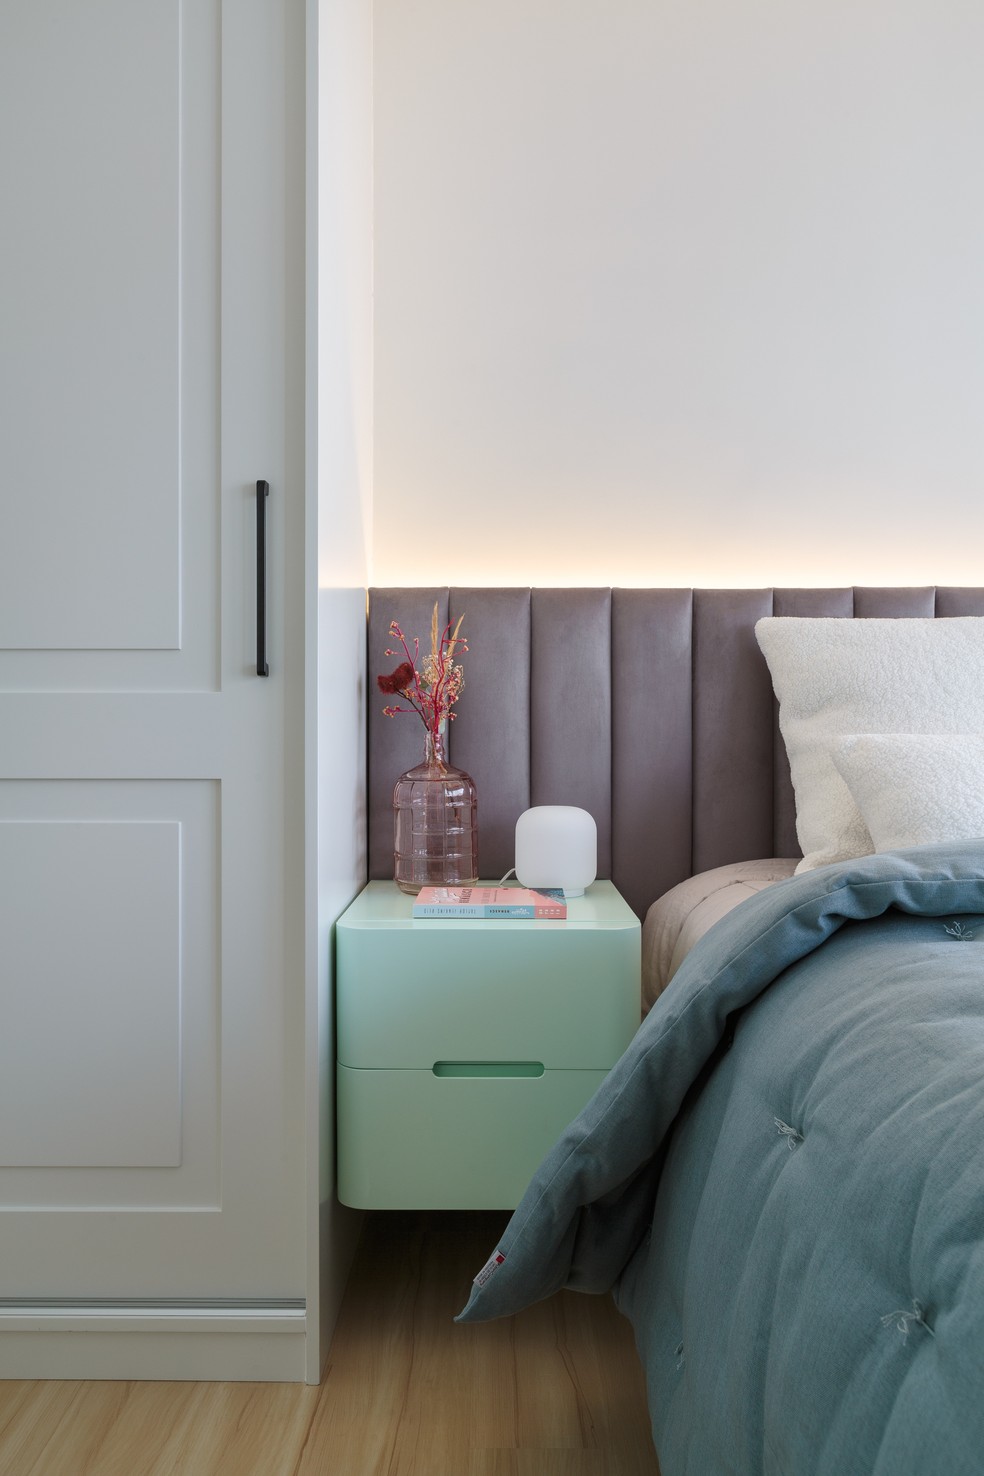 Piso vinílico amadeirado traz conforto térmico aos dormitórios — Foto: Felco